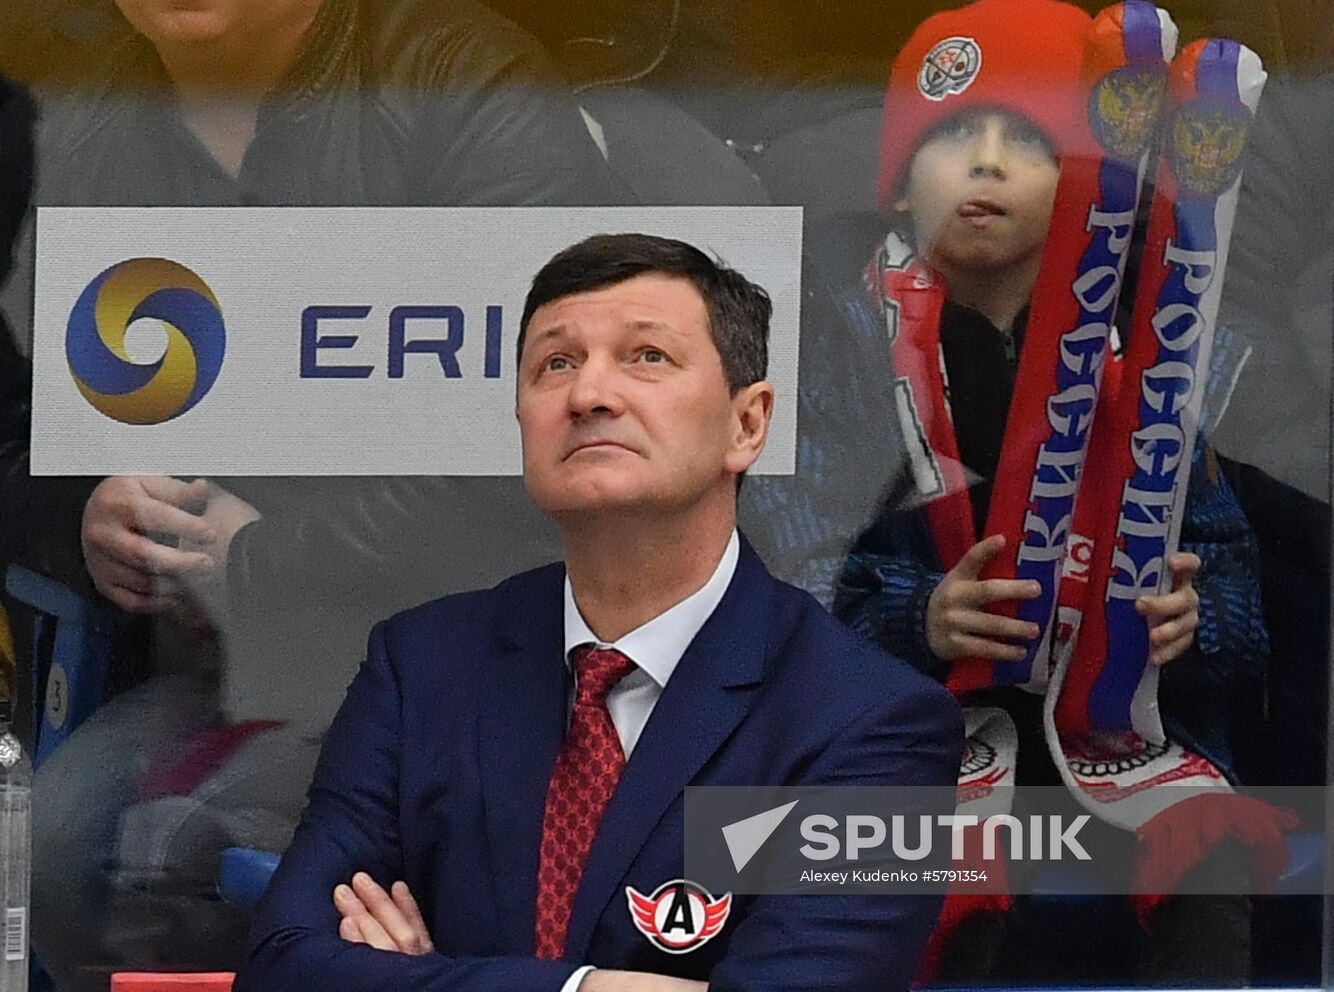 Russia Ice Hockey Avtomobilist - Vityaz